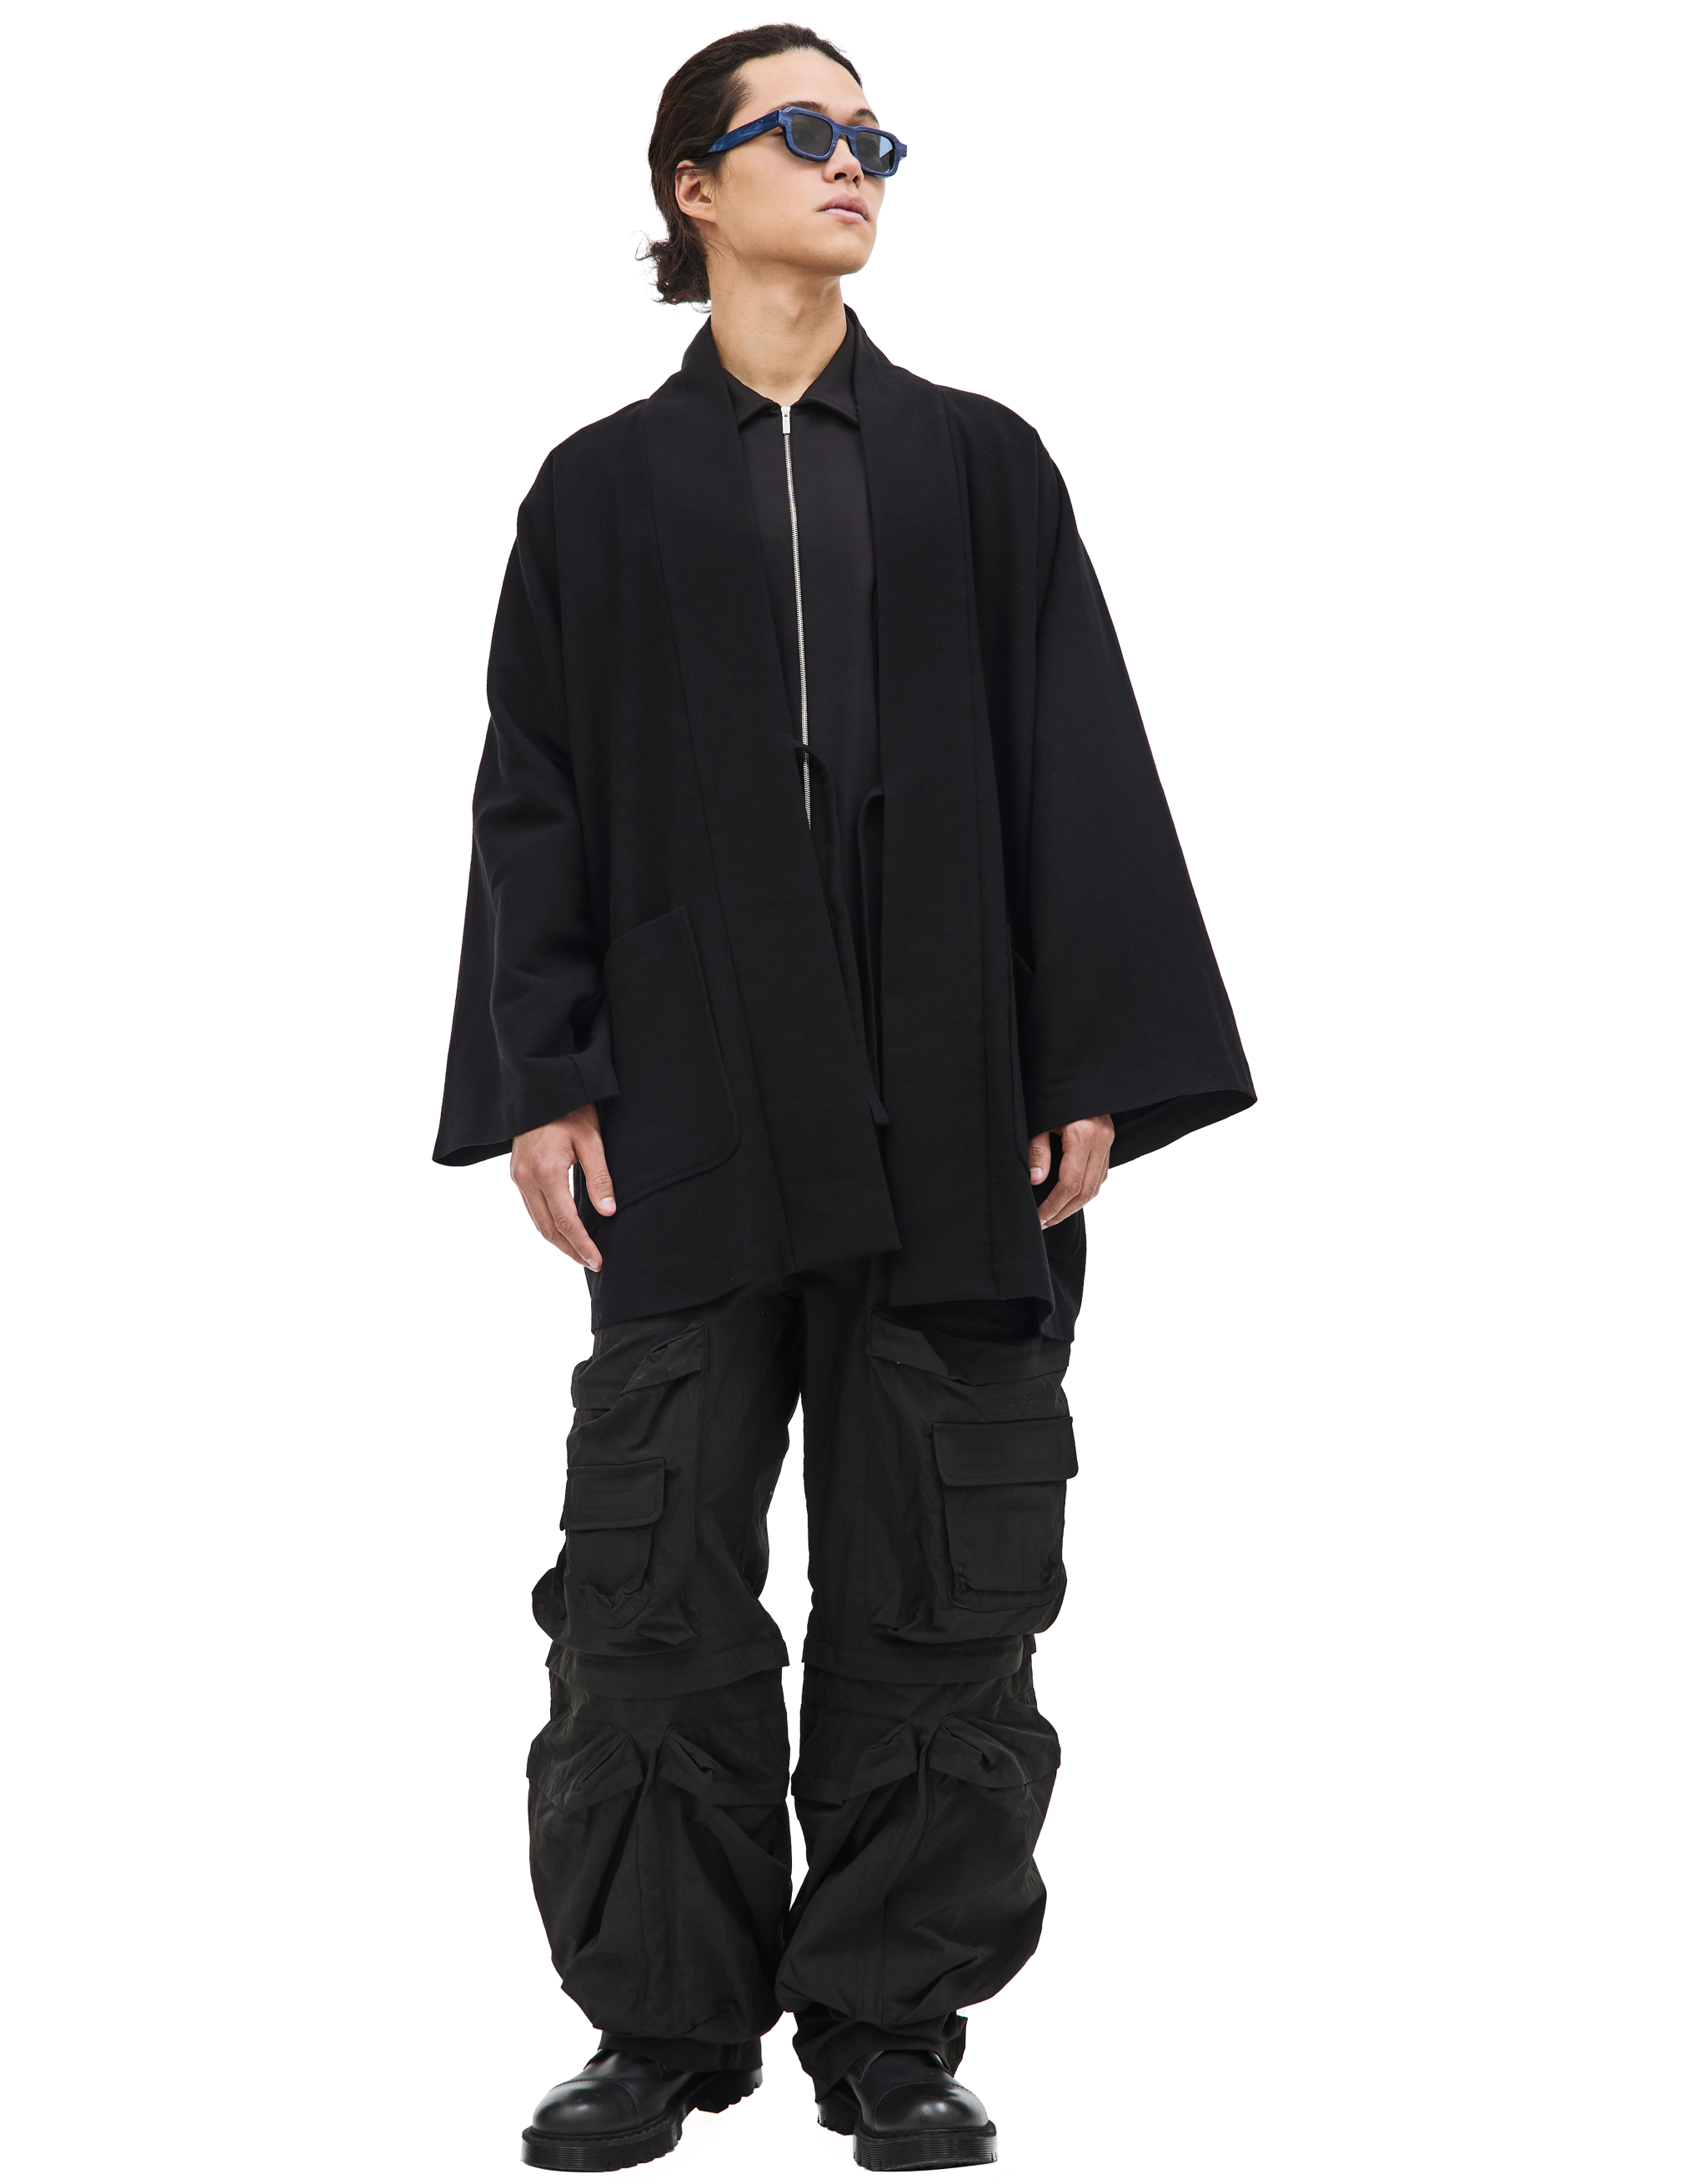 Шерстяная куртка-кимоно на завязках visvim 0123105013009, размер 4